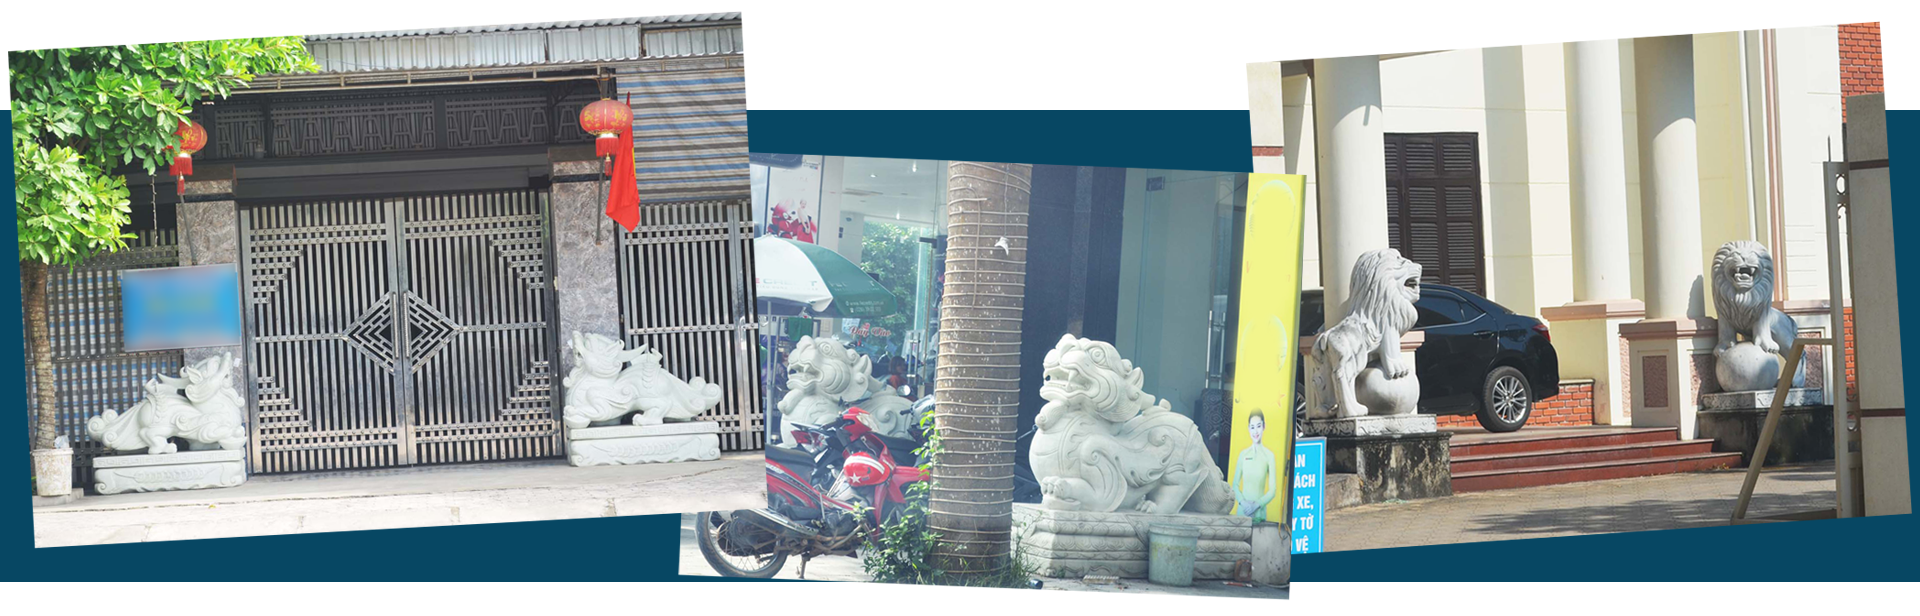 Linh vật ngoại được các đại gia ưa dùng, bày trước cổng nhà (ảnh chụp tại huyện Quỳ Hợp); Đôi sư tử đá ở trụ sở Sở LĐ-TB&XH (ảnh cuối).